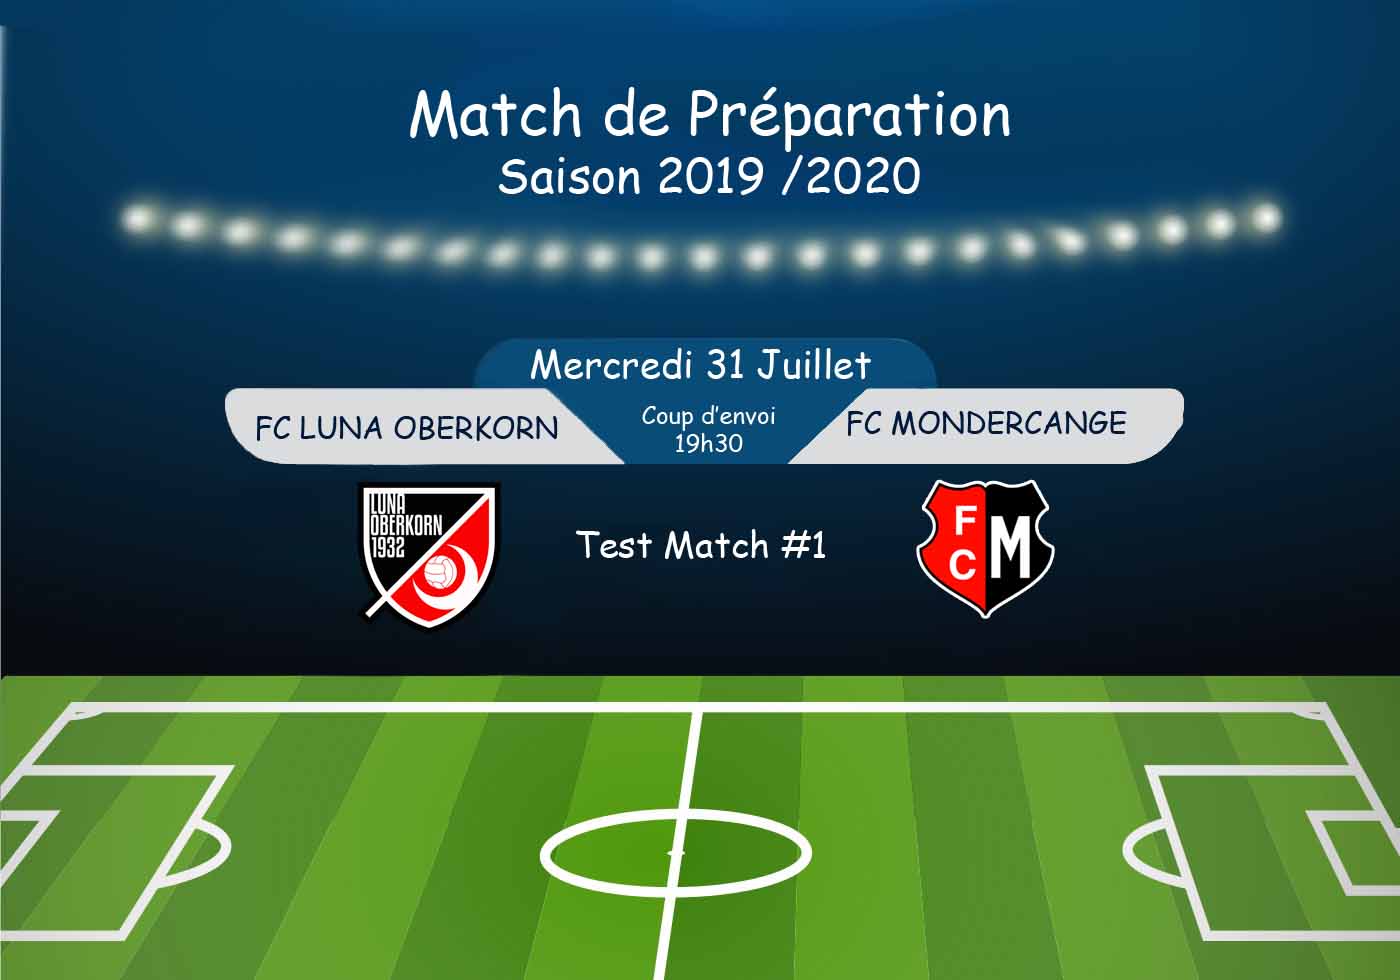 Match de Préparation - Saison 2019 / 2020